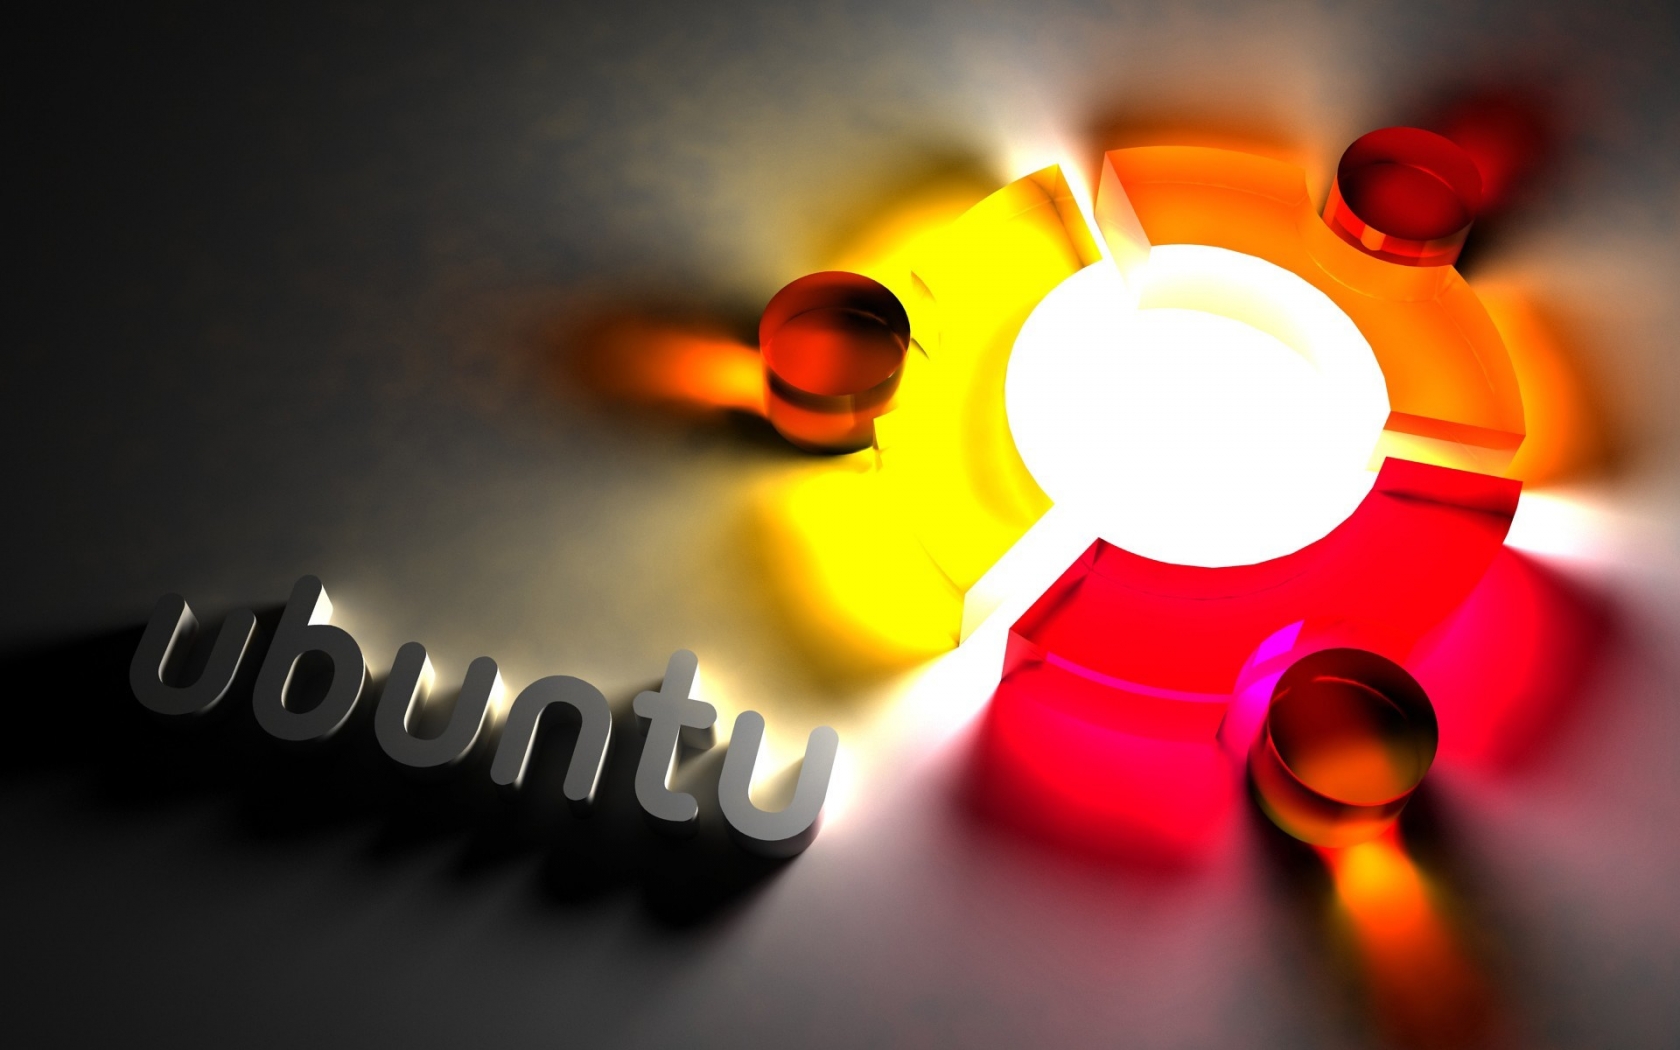 Ubuntu Cool Logo for 1680 x 1050 widescreen resolution